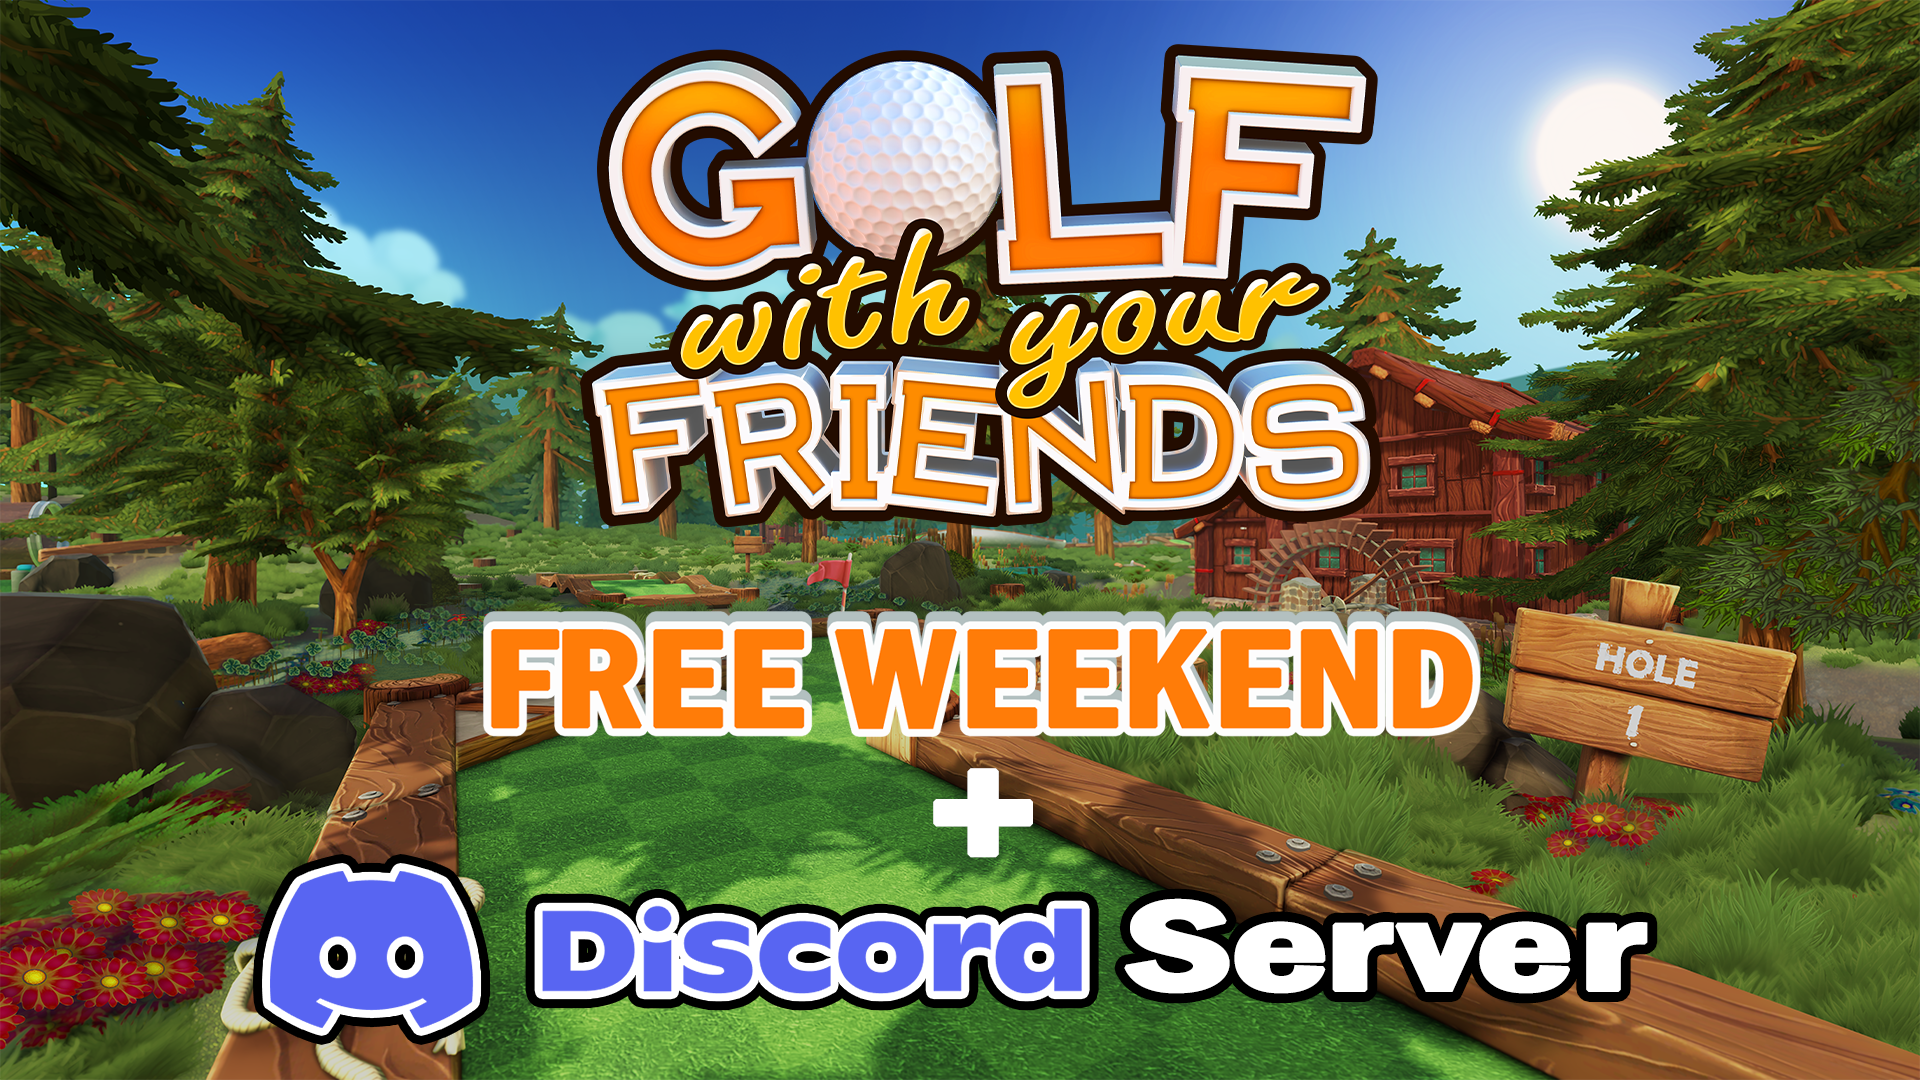 Golf With Your Friends - Golf With Your Friends Free Weekend + Official  Discord Server - Steam News